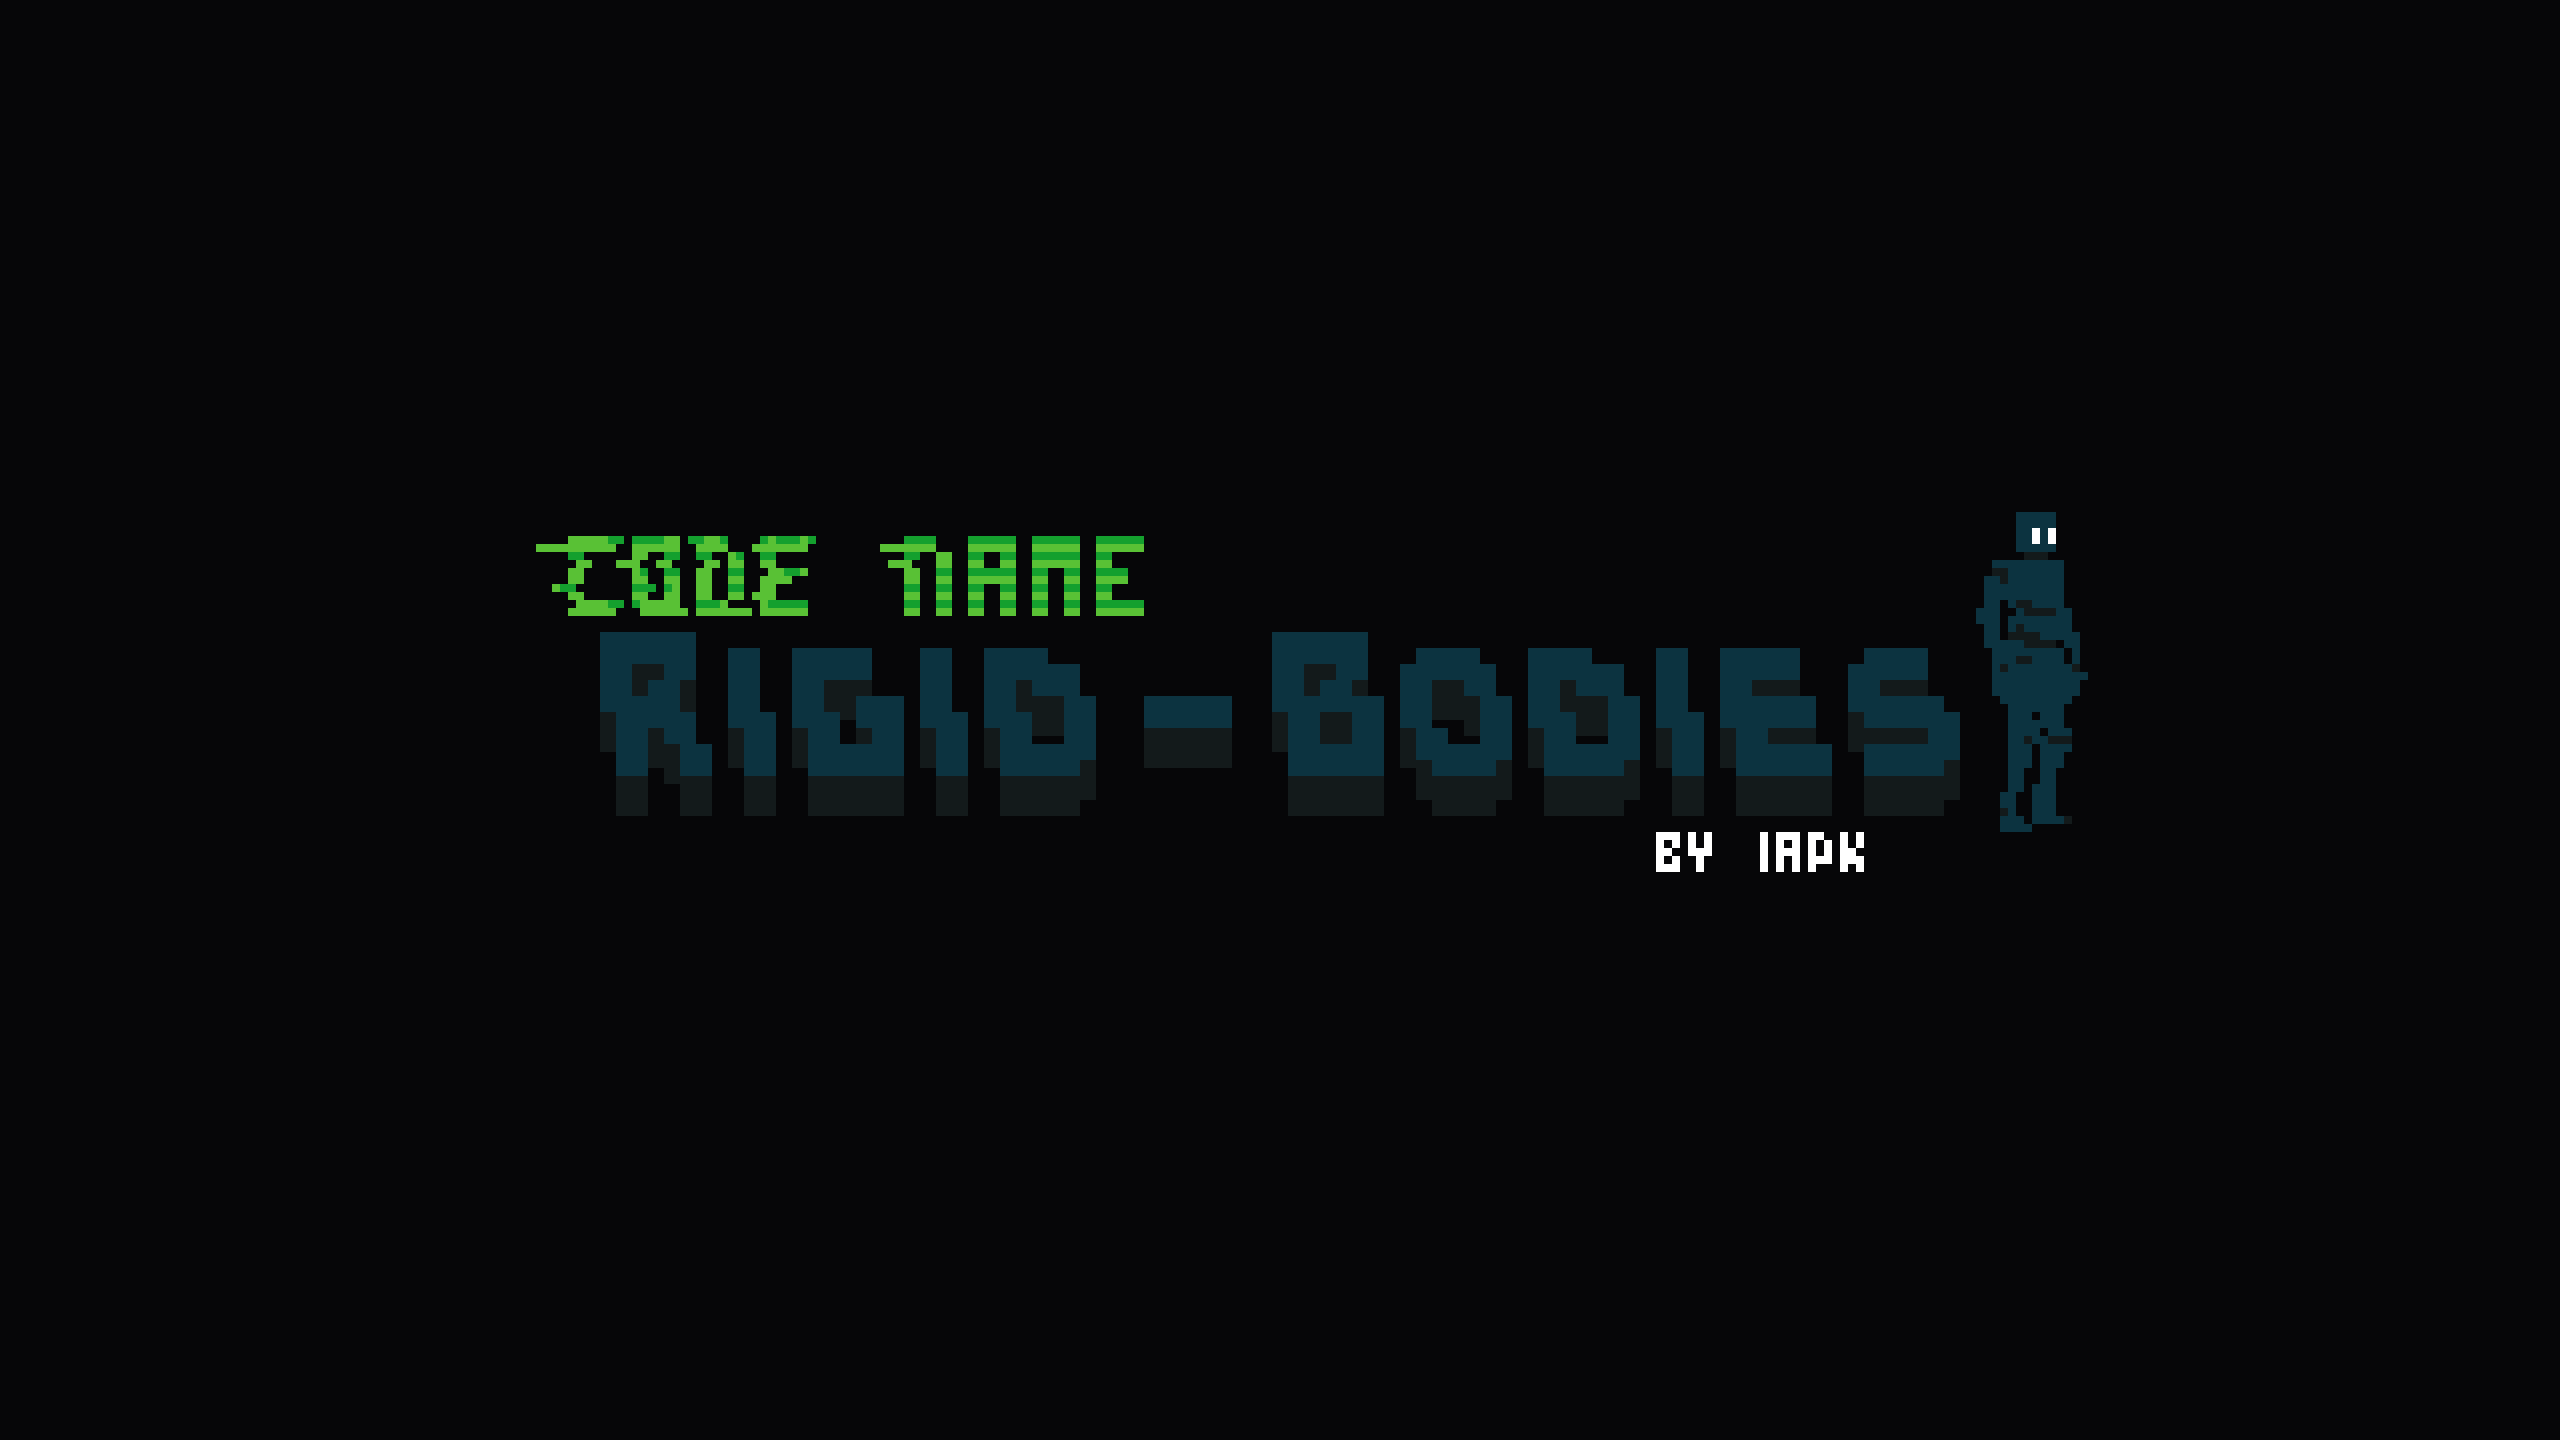 Code Name Rigid-Bodies